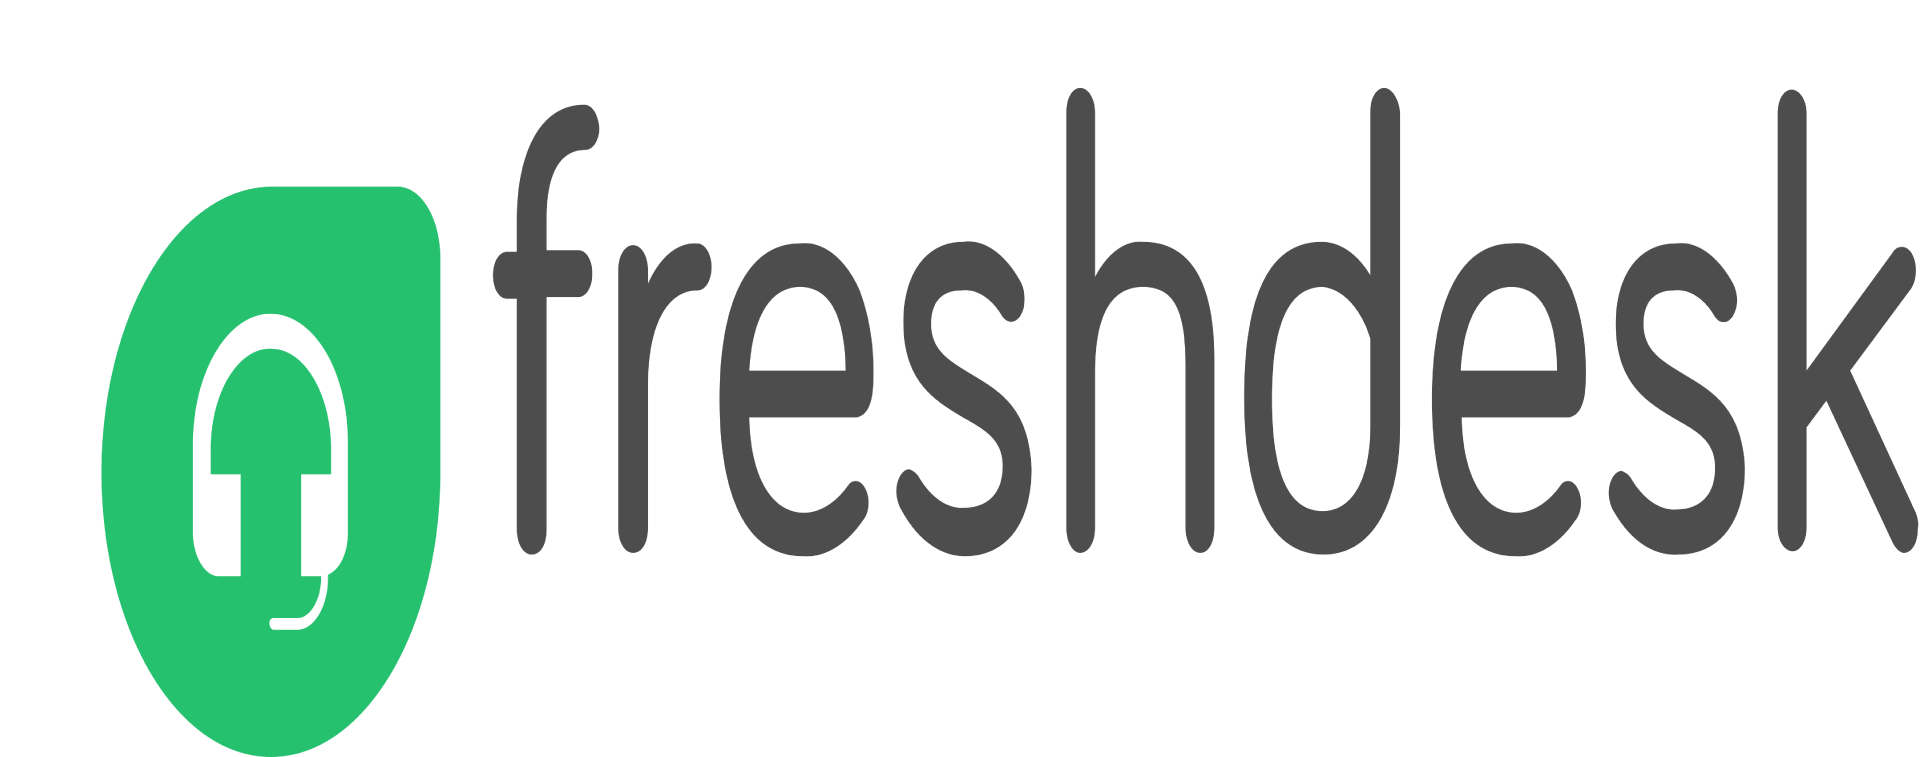 freshdesk competitors, zoho vs freshdesk, freshdesk competitors in india, freshdesk vs zendesk, freshdesk vs zoho desk